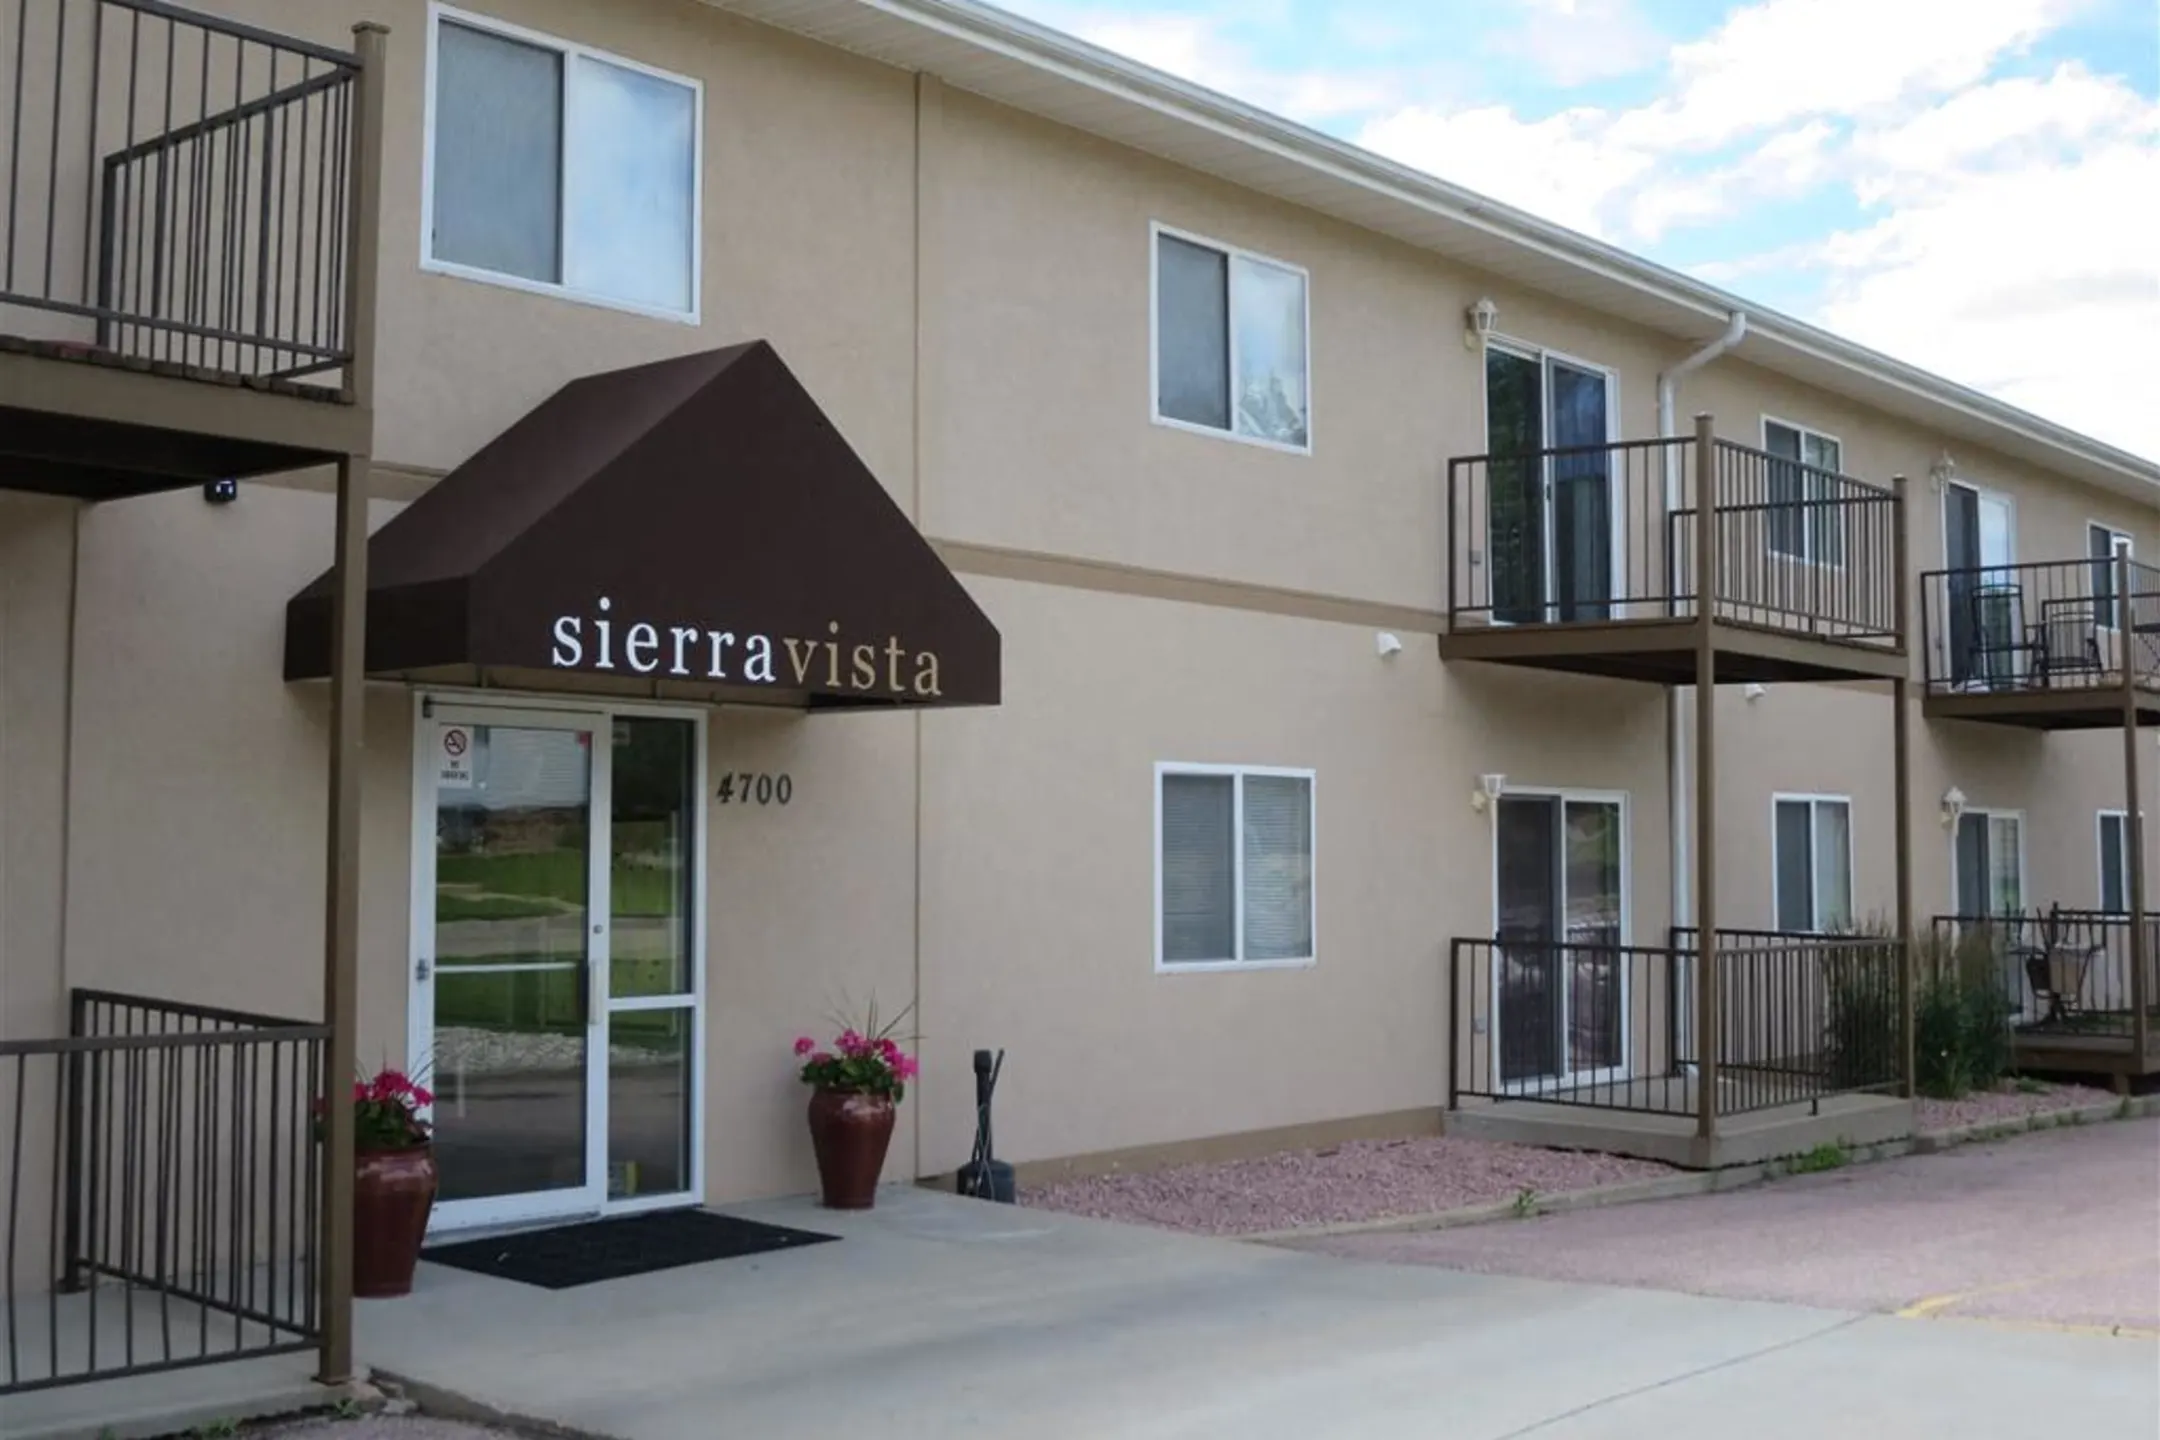 Building - Sierra Vista Apartments - Sioux Falls, SD